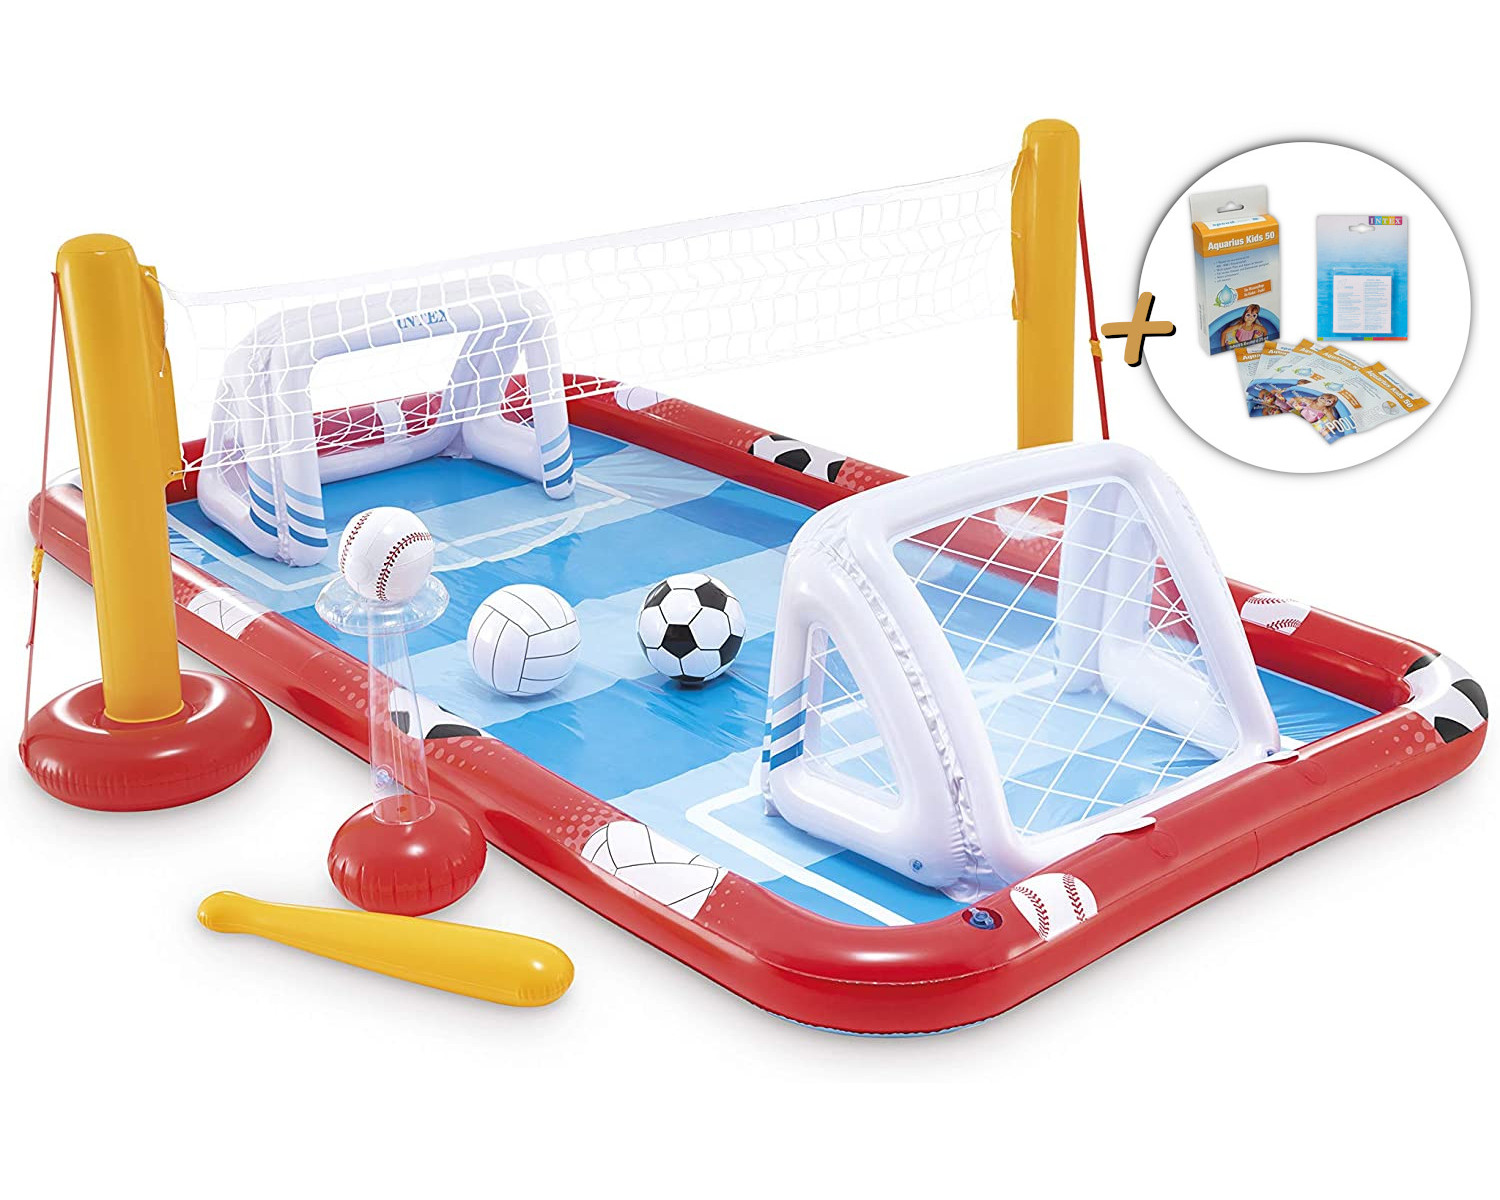 Sports Planschbecken, Playcenter Action mehrfarbig - INTEX Reparaturflicken + (325x267x102cm) Wasserpflege Playcenter, &